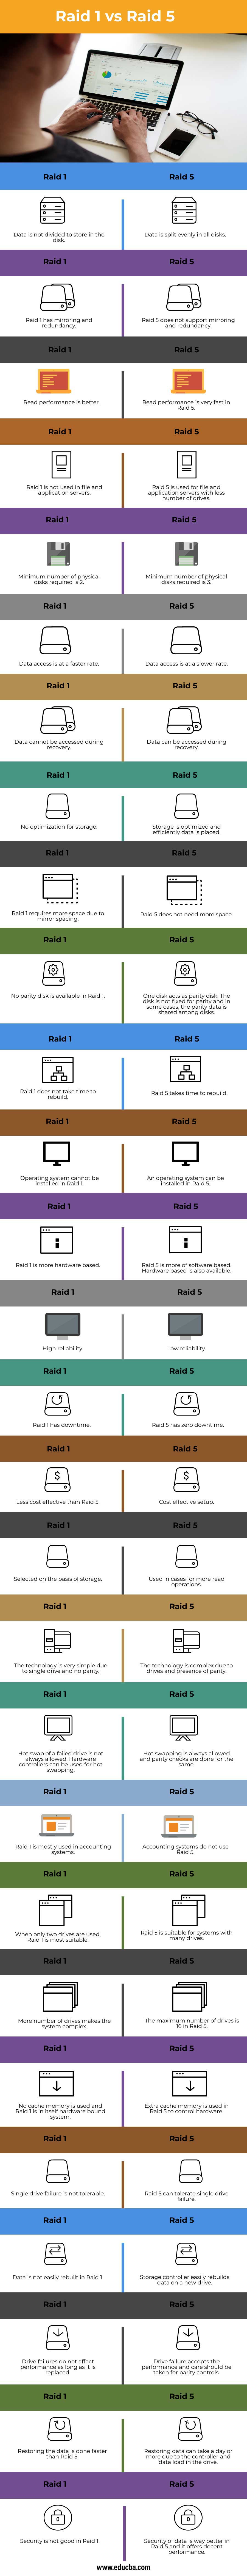 Raid-1-vs-Raid-5-info